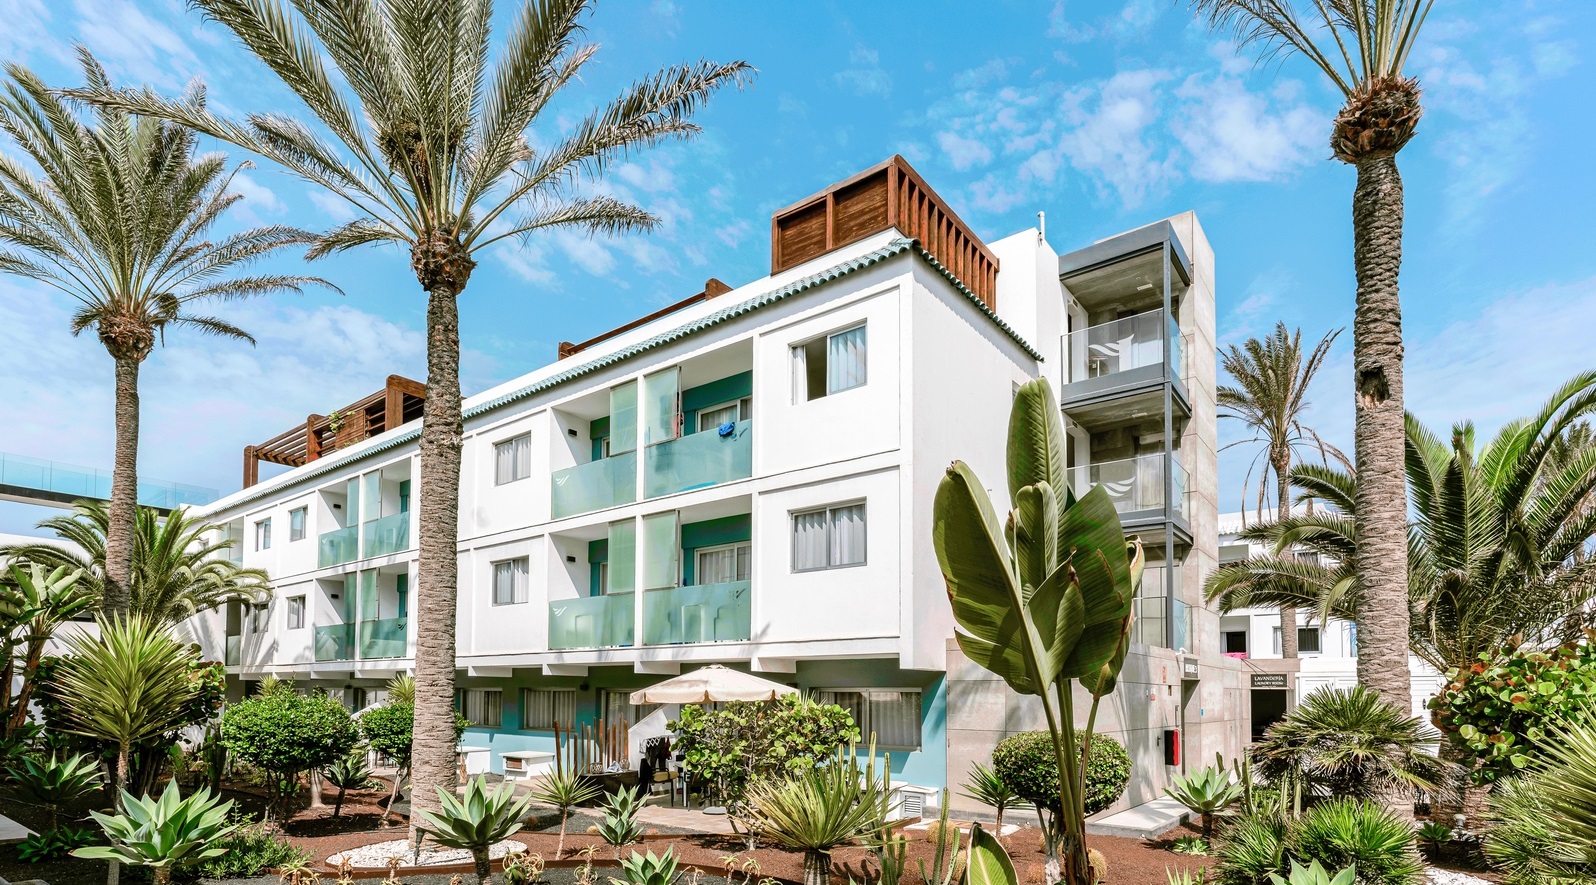 Investissement immobilier à Fuerteventura : Municipalités par rentabilité